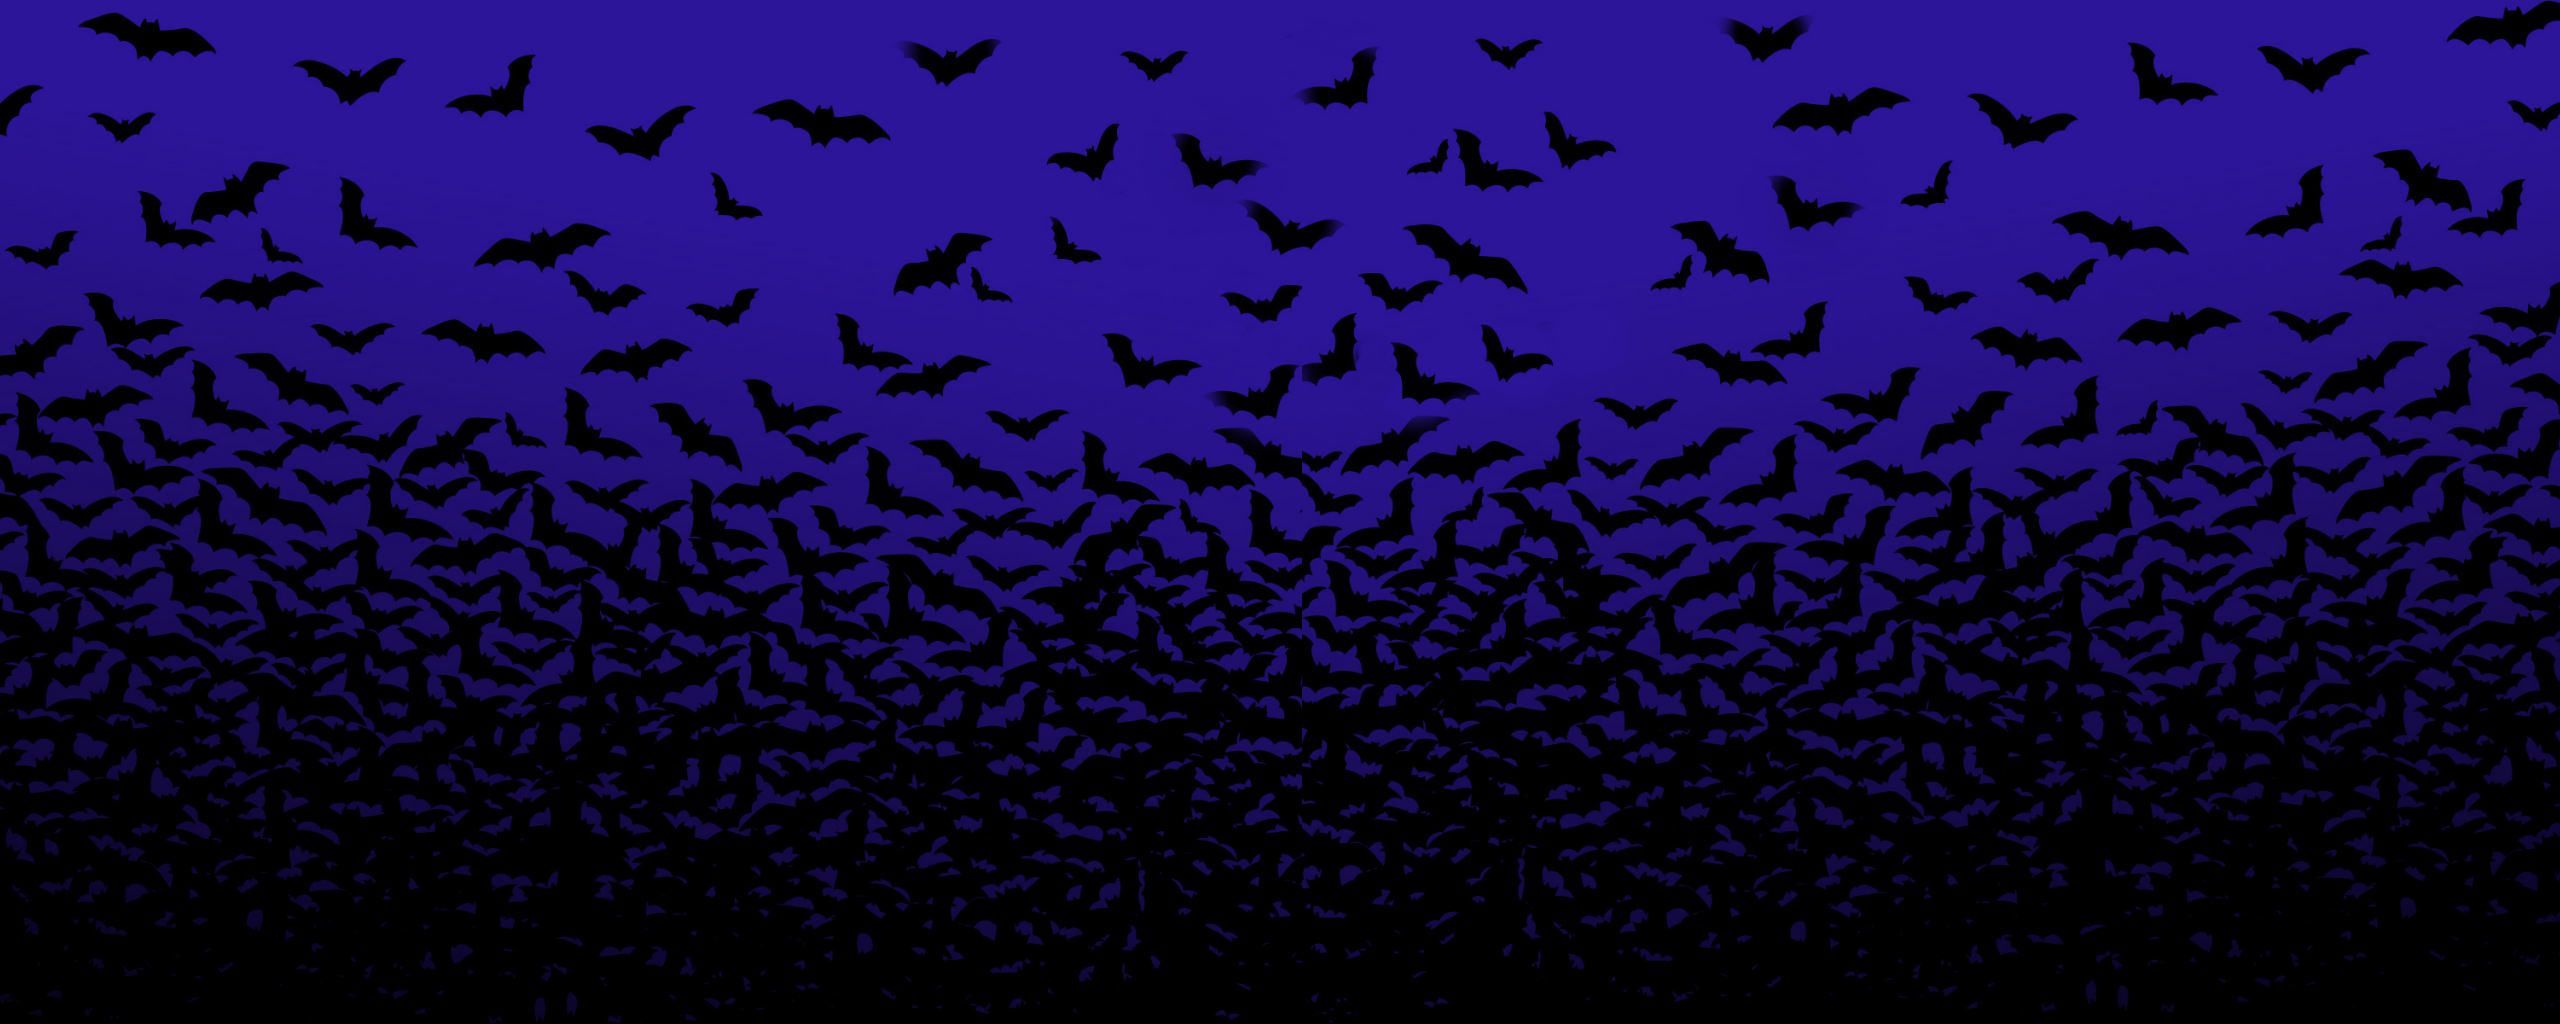 T Shirt Madness!. Halloween Wallpaper, Halloween Bats, Dual Screen Wallpaper